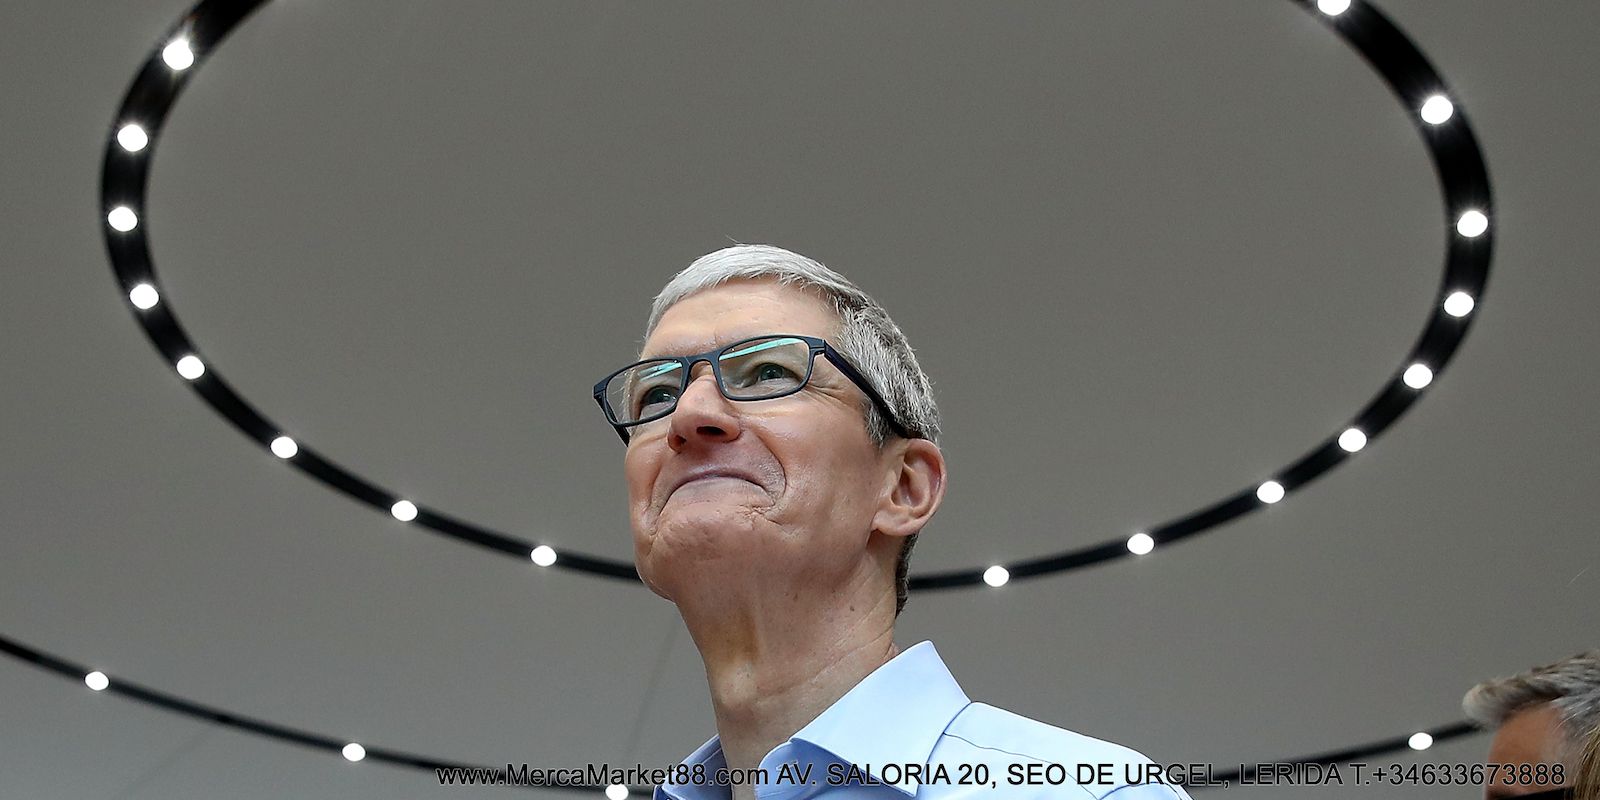 Tim Cook CEO Apple Di Bawah Lampu di Panggung